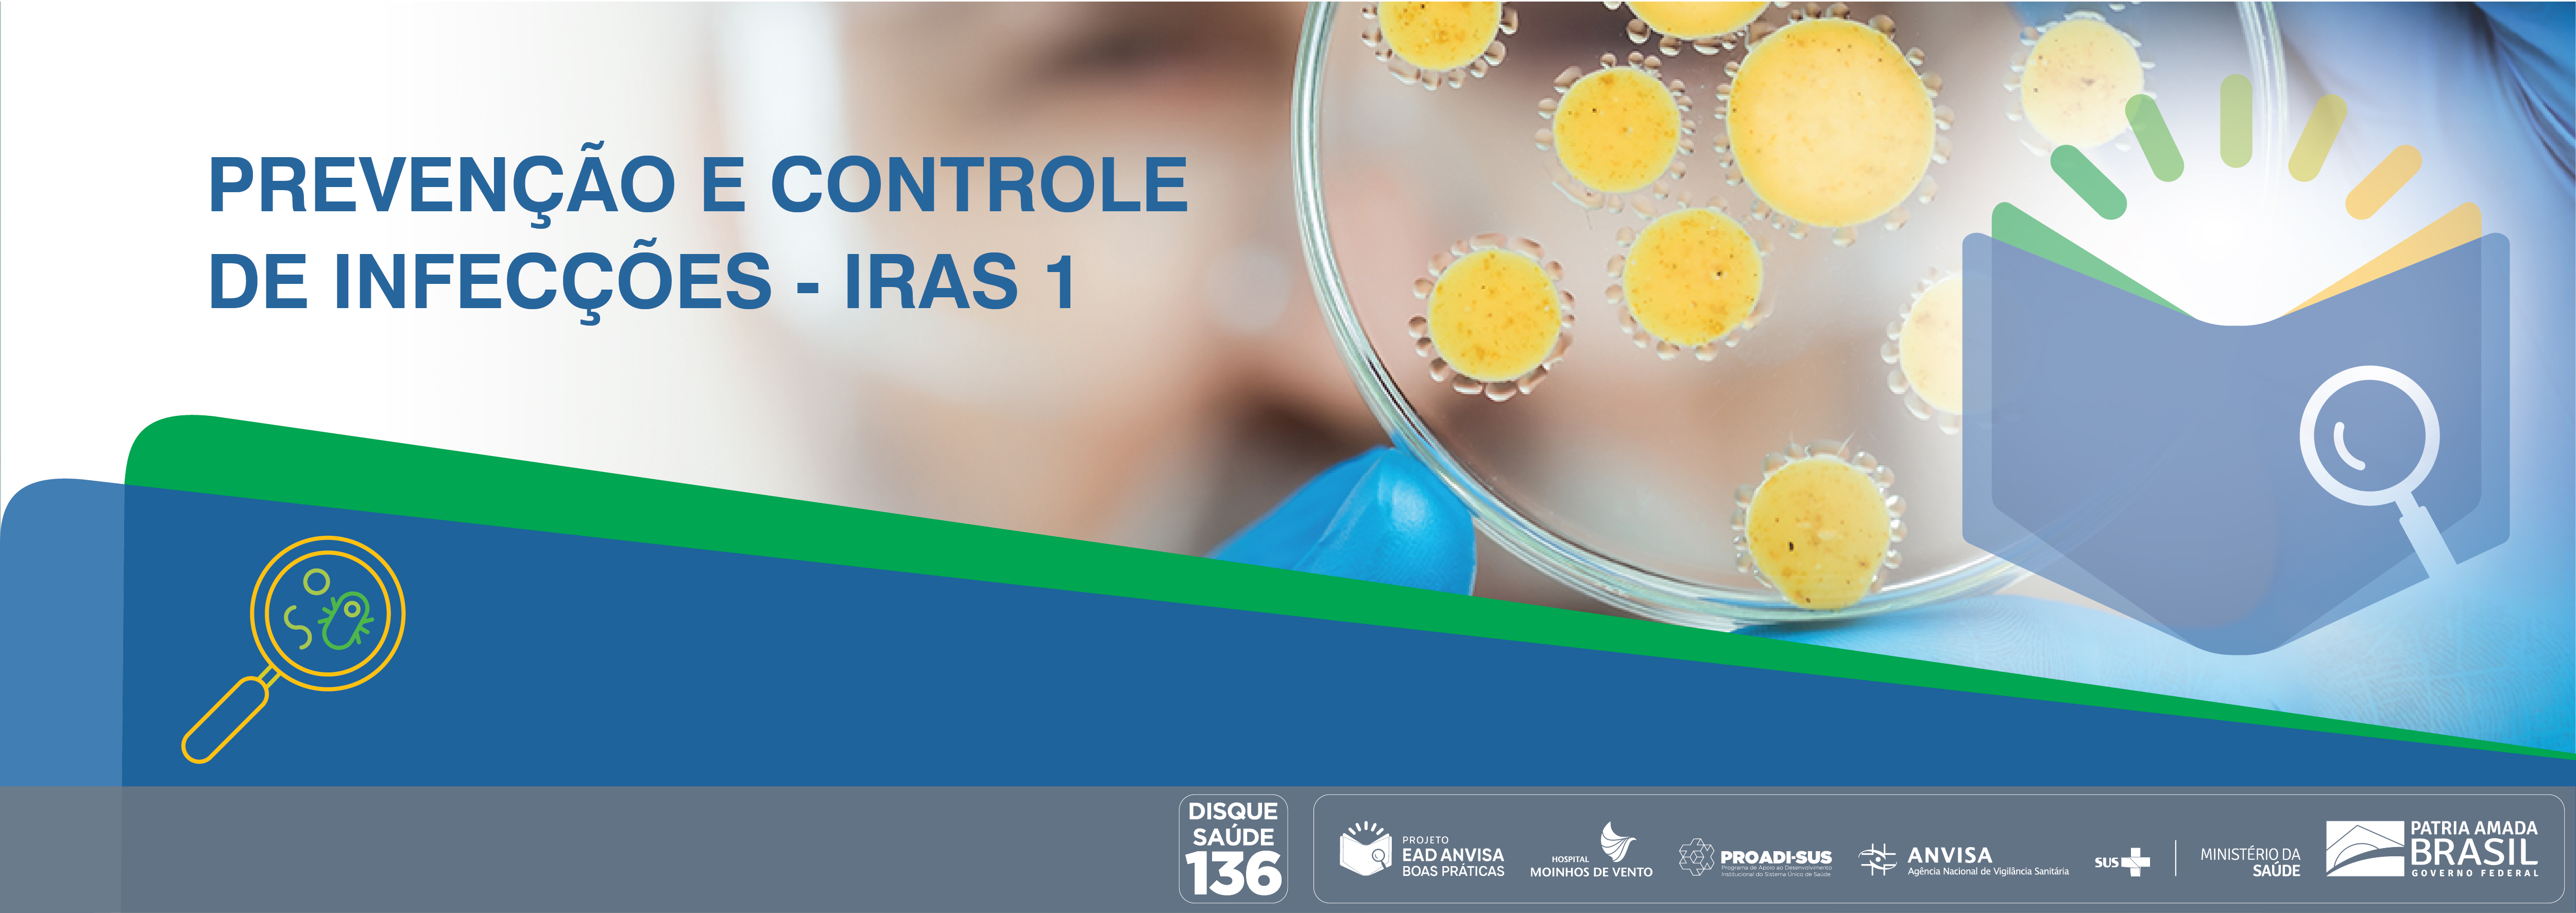 Boas Práticas de Inspeção em Serviços de Saúde com foco nas Ações de Prevenção e Controle das Infecções Relacionadas à Assistência à Saúde e Resistência Microbiana (RM) - Módulo 1 ANVISA_2021_IRAS1